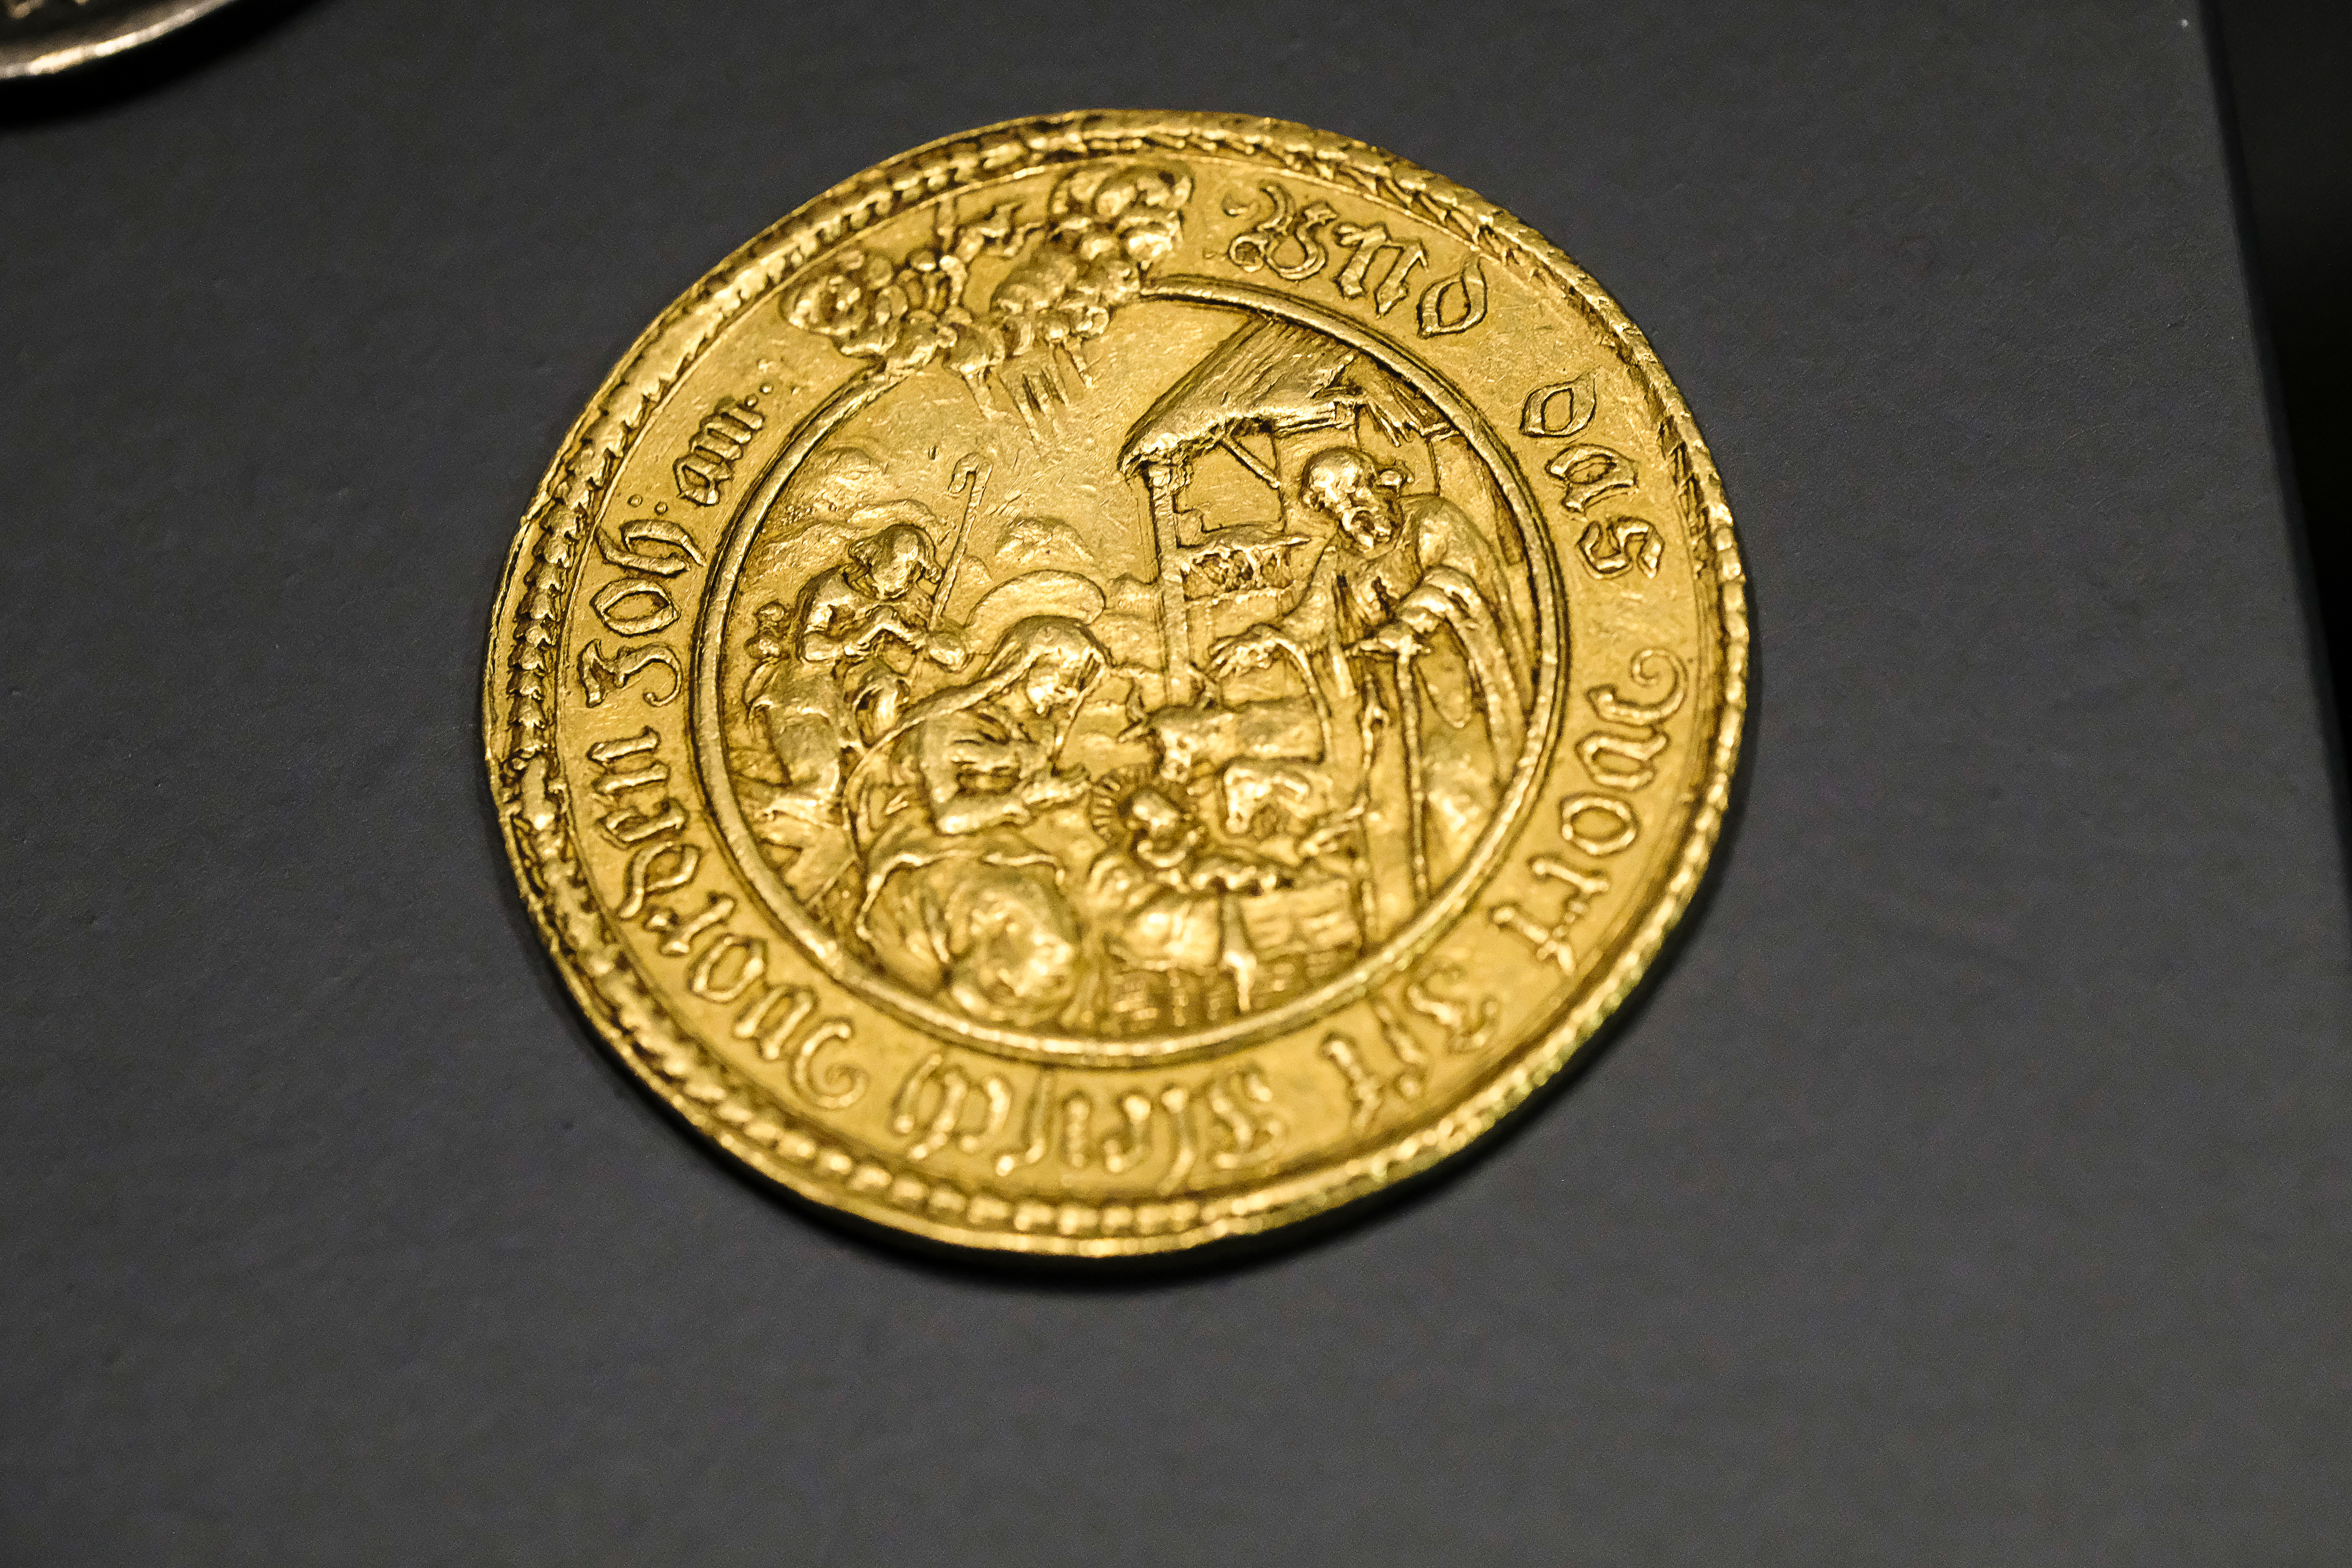 Goldene Münze